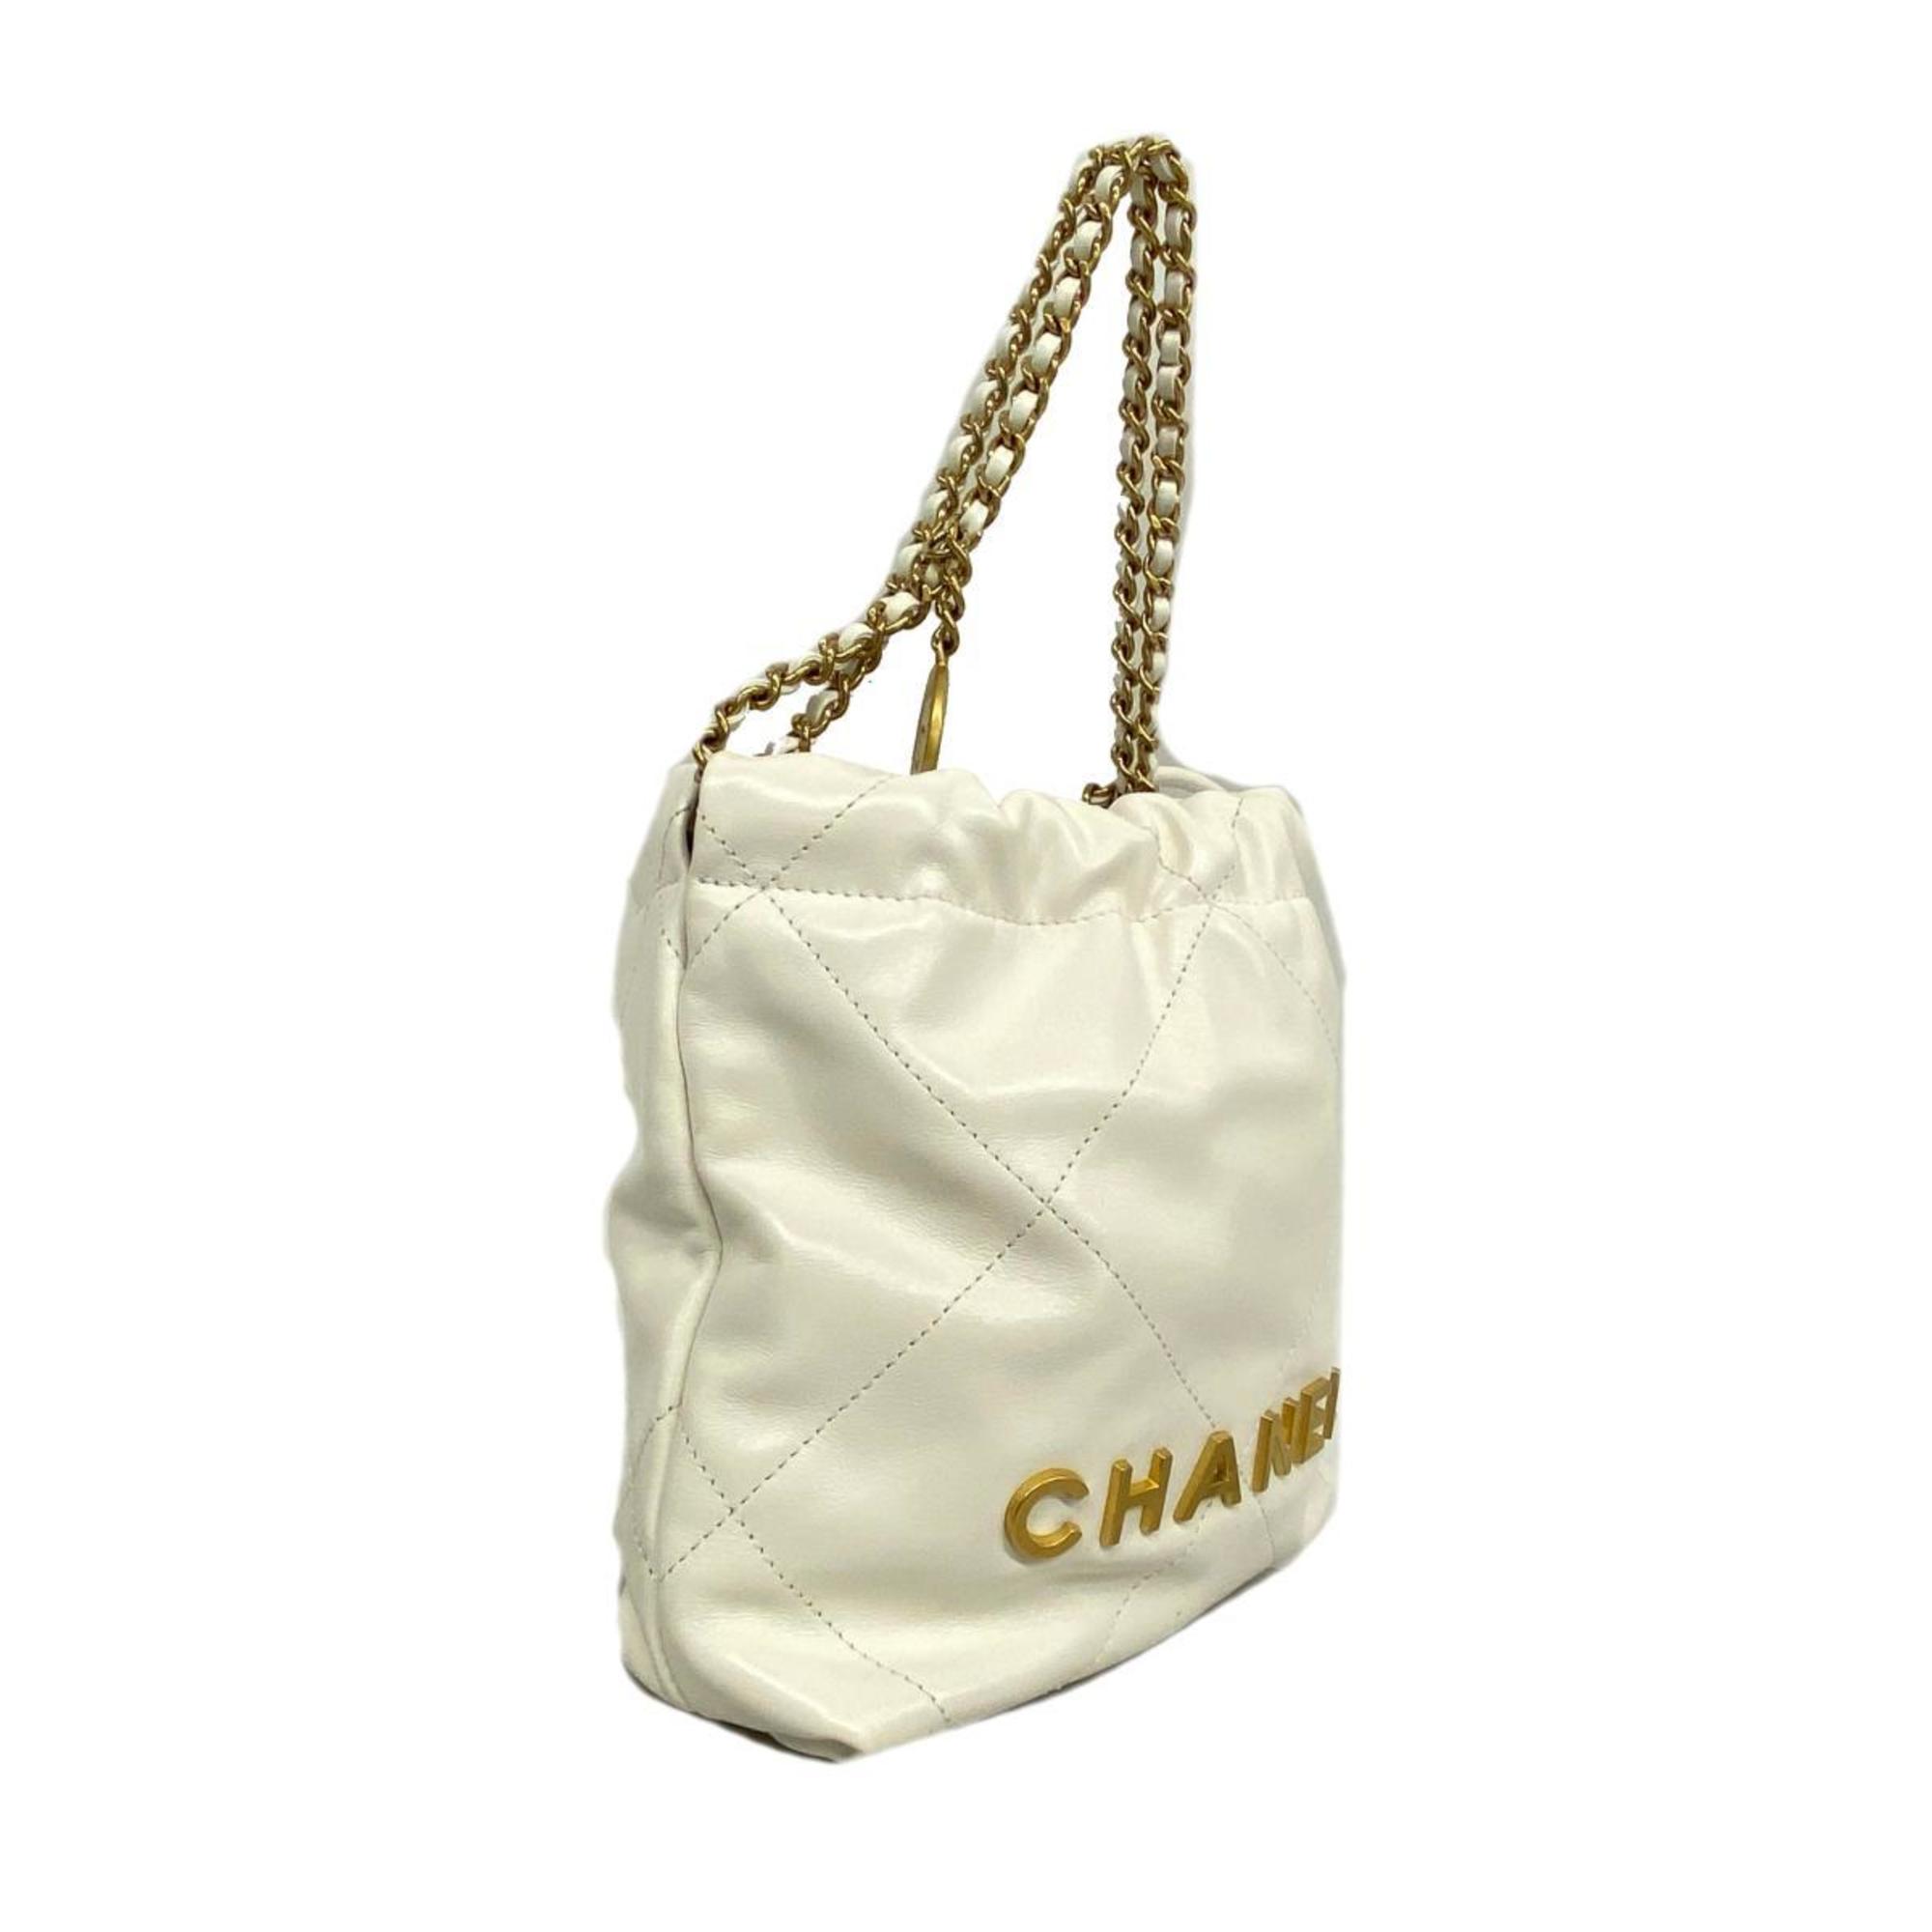 シャネル(Chanel) シャネル ハンドバッグ シャネル22 チェーンショルダー レザー ホワイト   レディース